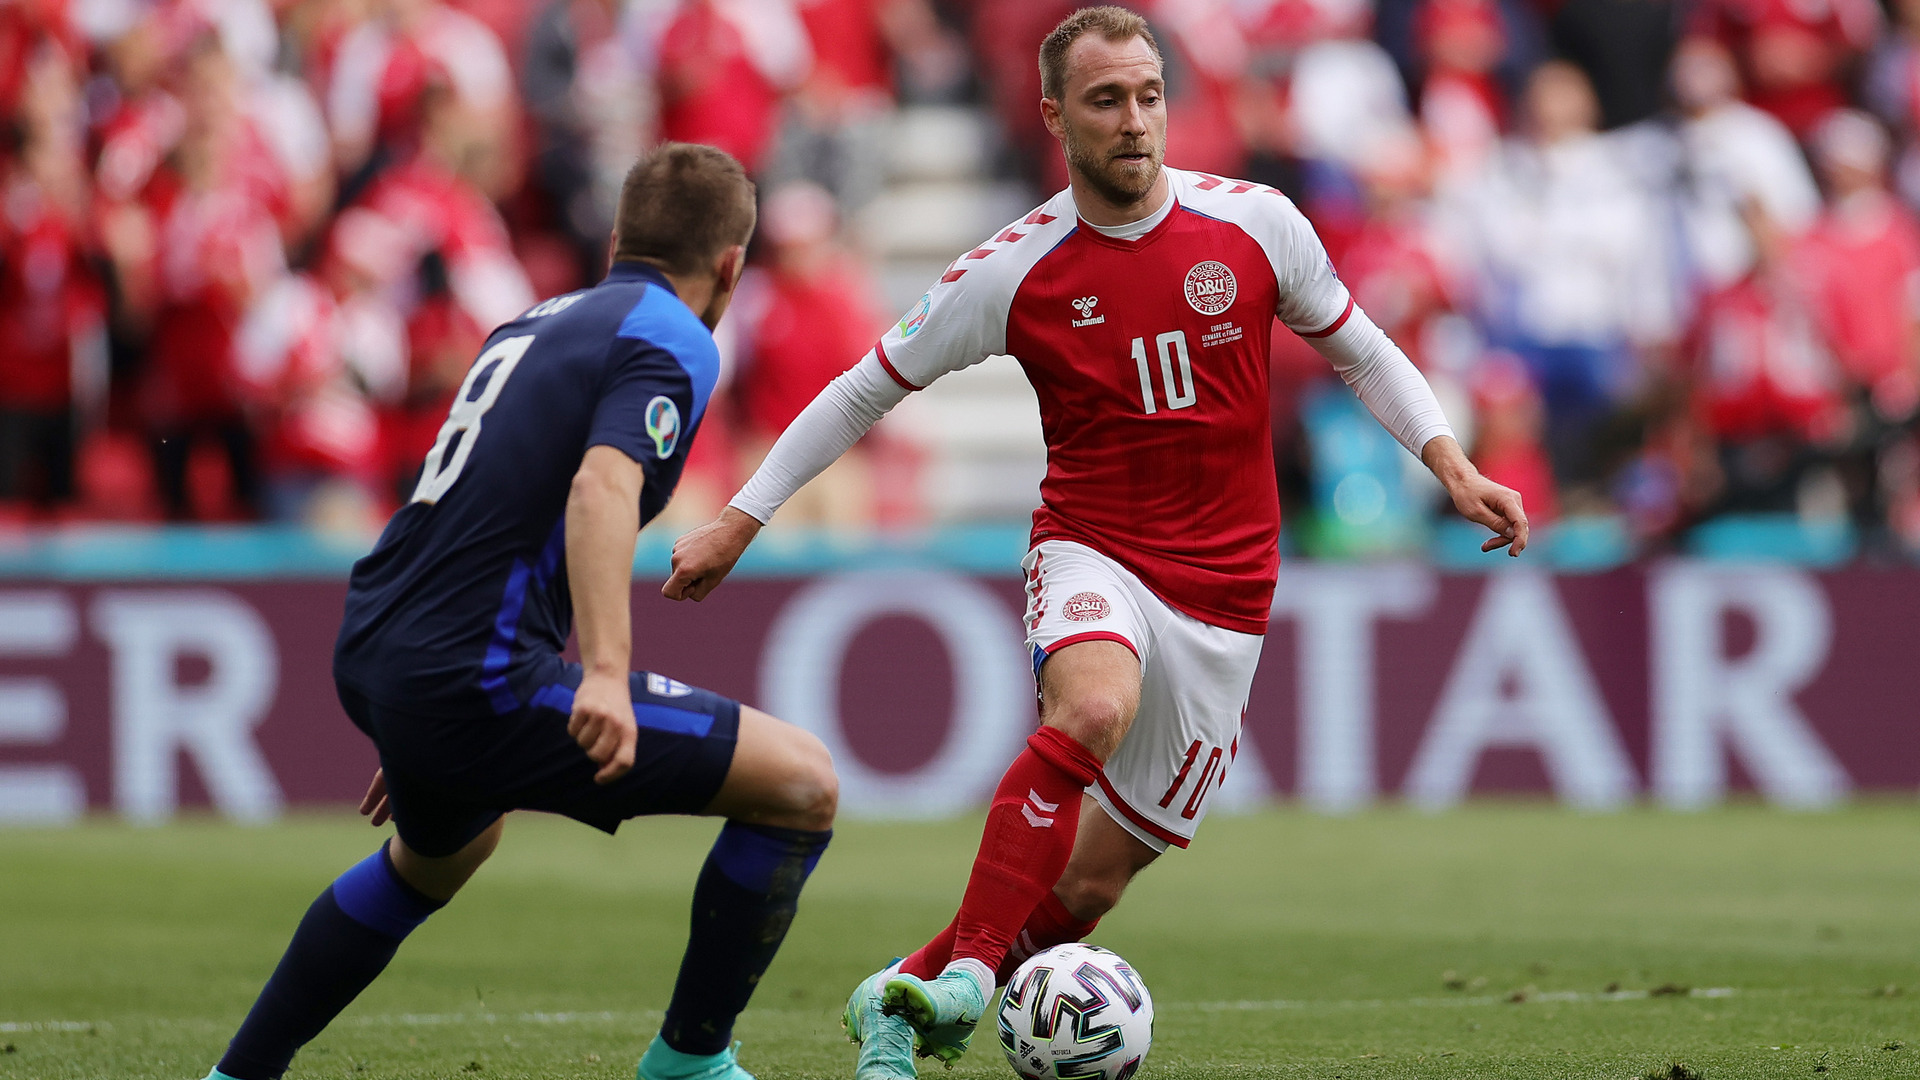 Danemark-Finlande (0-1) : Le Danemark battu mais soulagé pour Eriksen